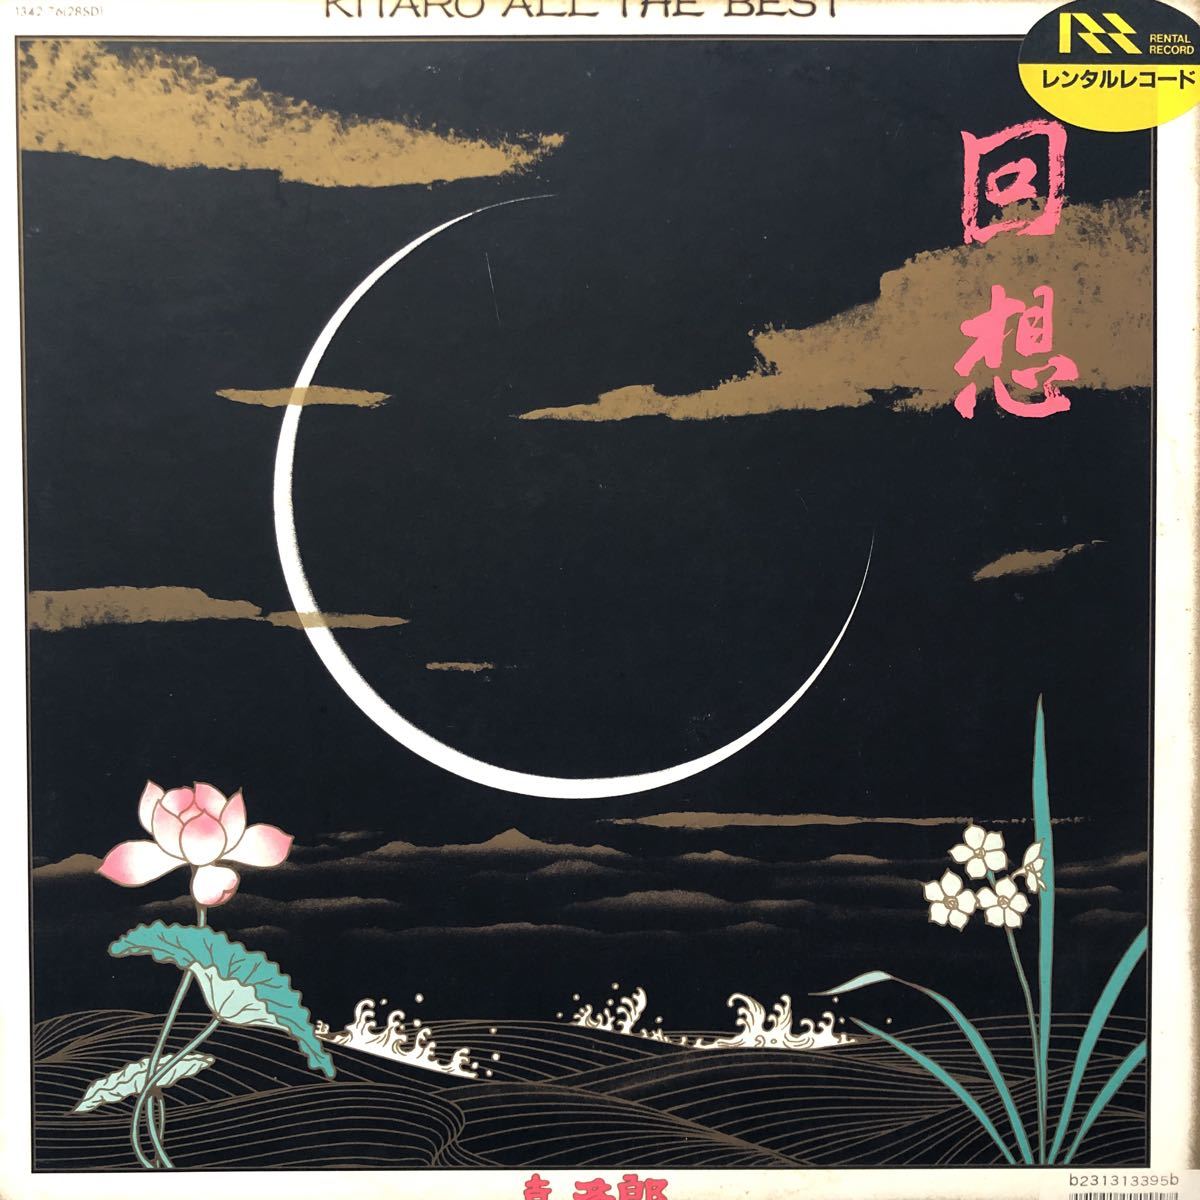 喜多郎 KITARO 回想 LP レコード 5点以上落札で送料無料Sの画像1